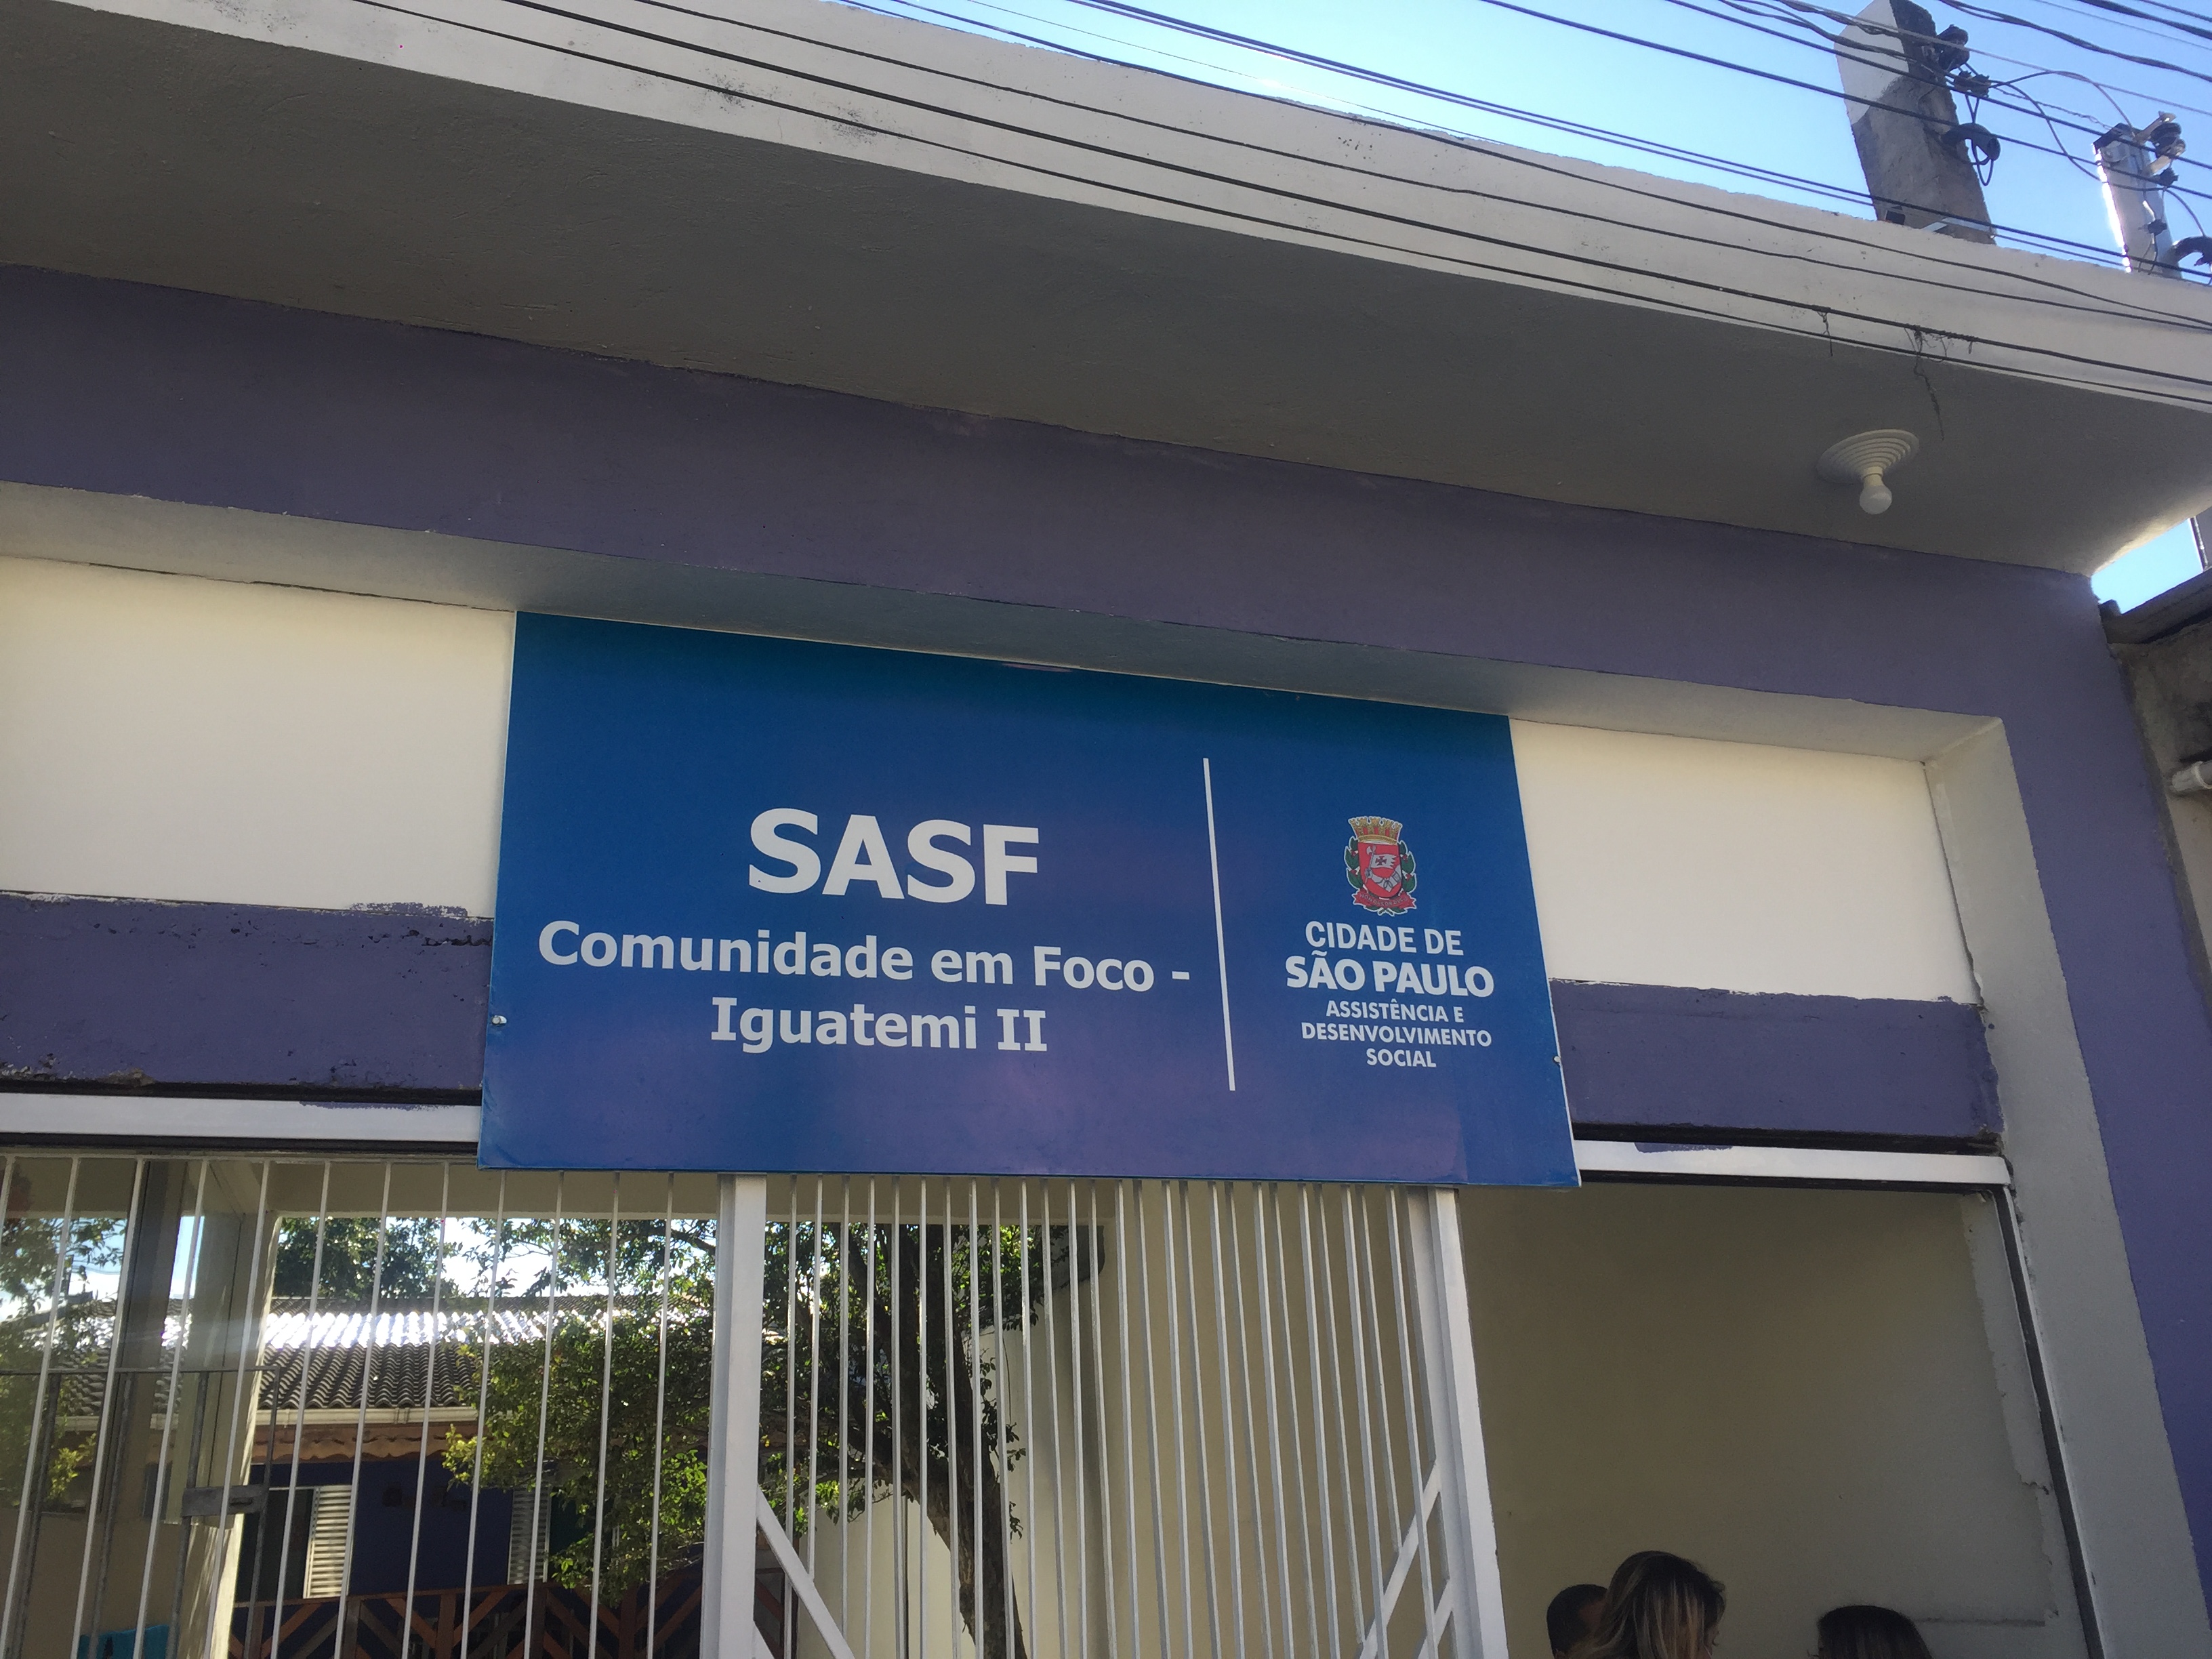 Placa com fundo azul e letras brancas, informa: SASF Comunidade em Foco Iguatemi II. À direita o logotipo Cidade de São Paulo, Assistência e Desenvolvimento Social